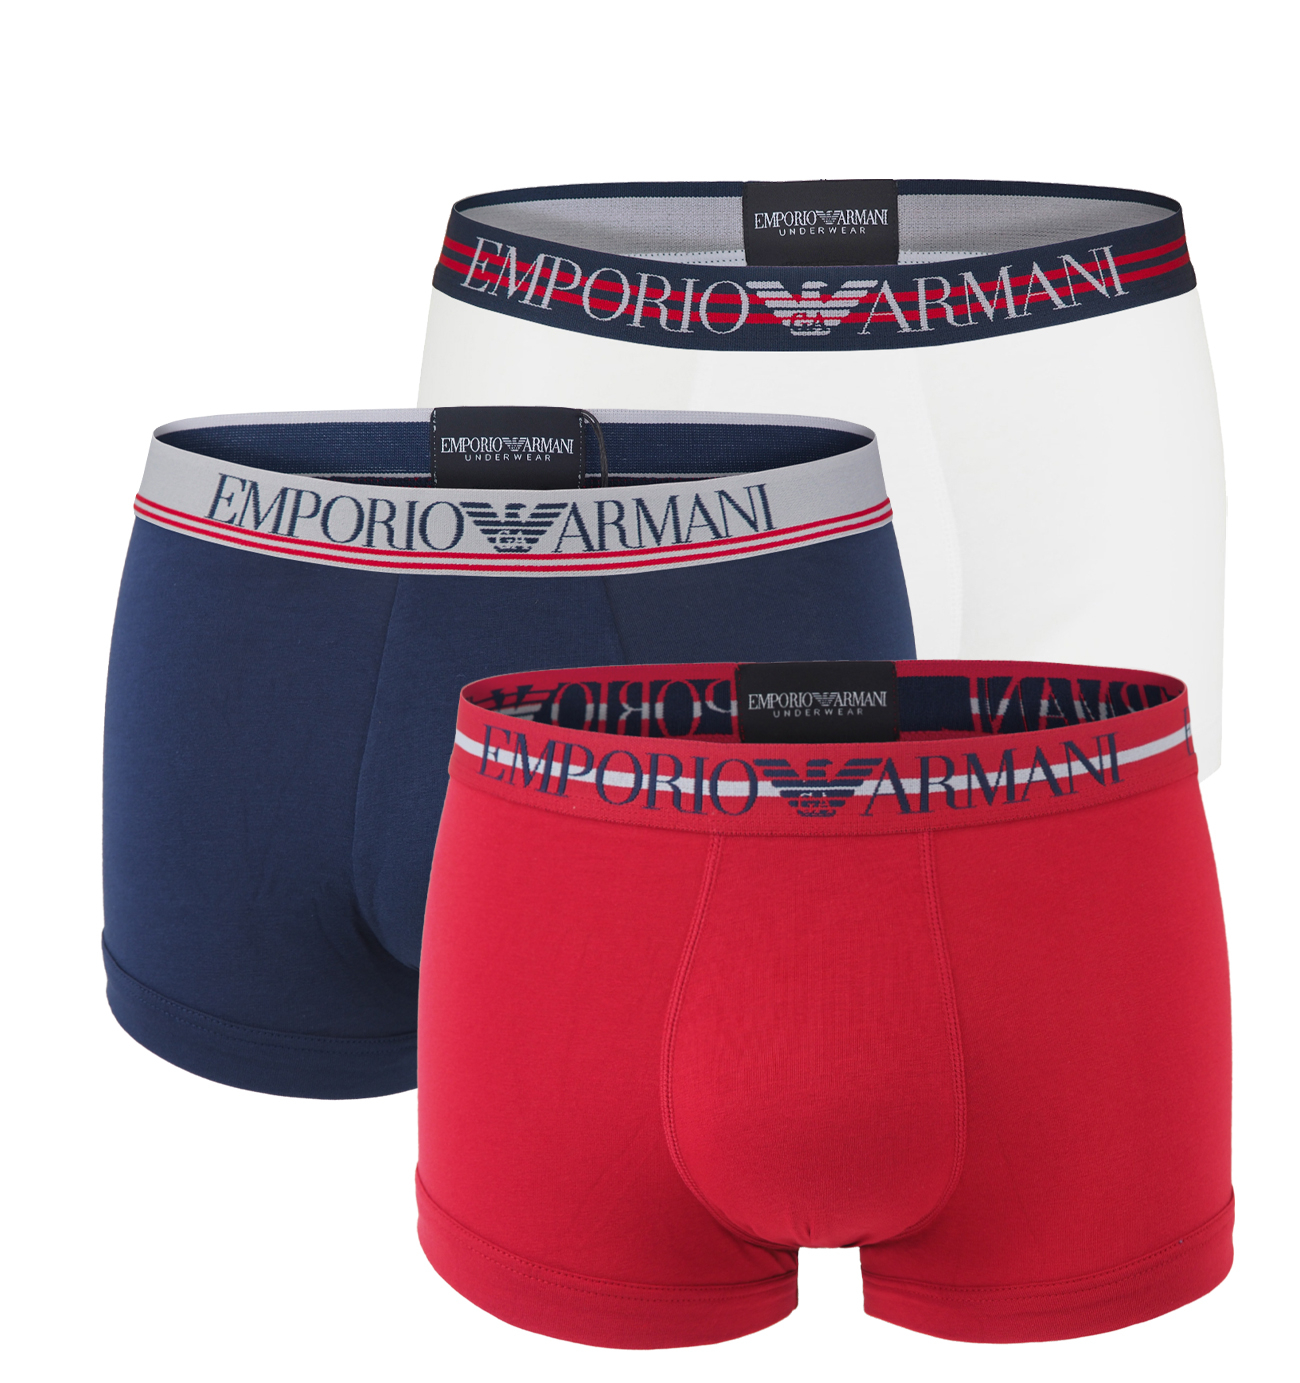 EMPORIO ARMANI - boxerky 3PACK stretch stretch cotton fashion ciliegia colore - limited edition